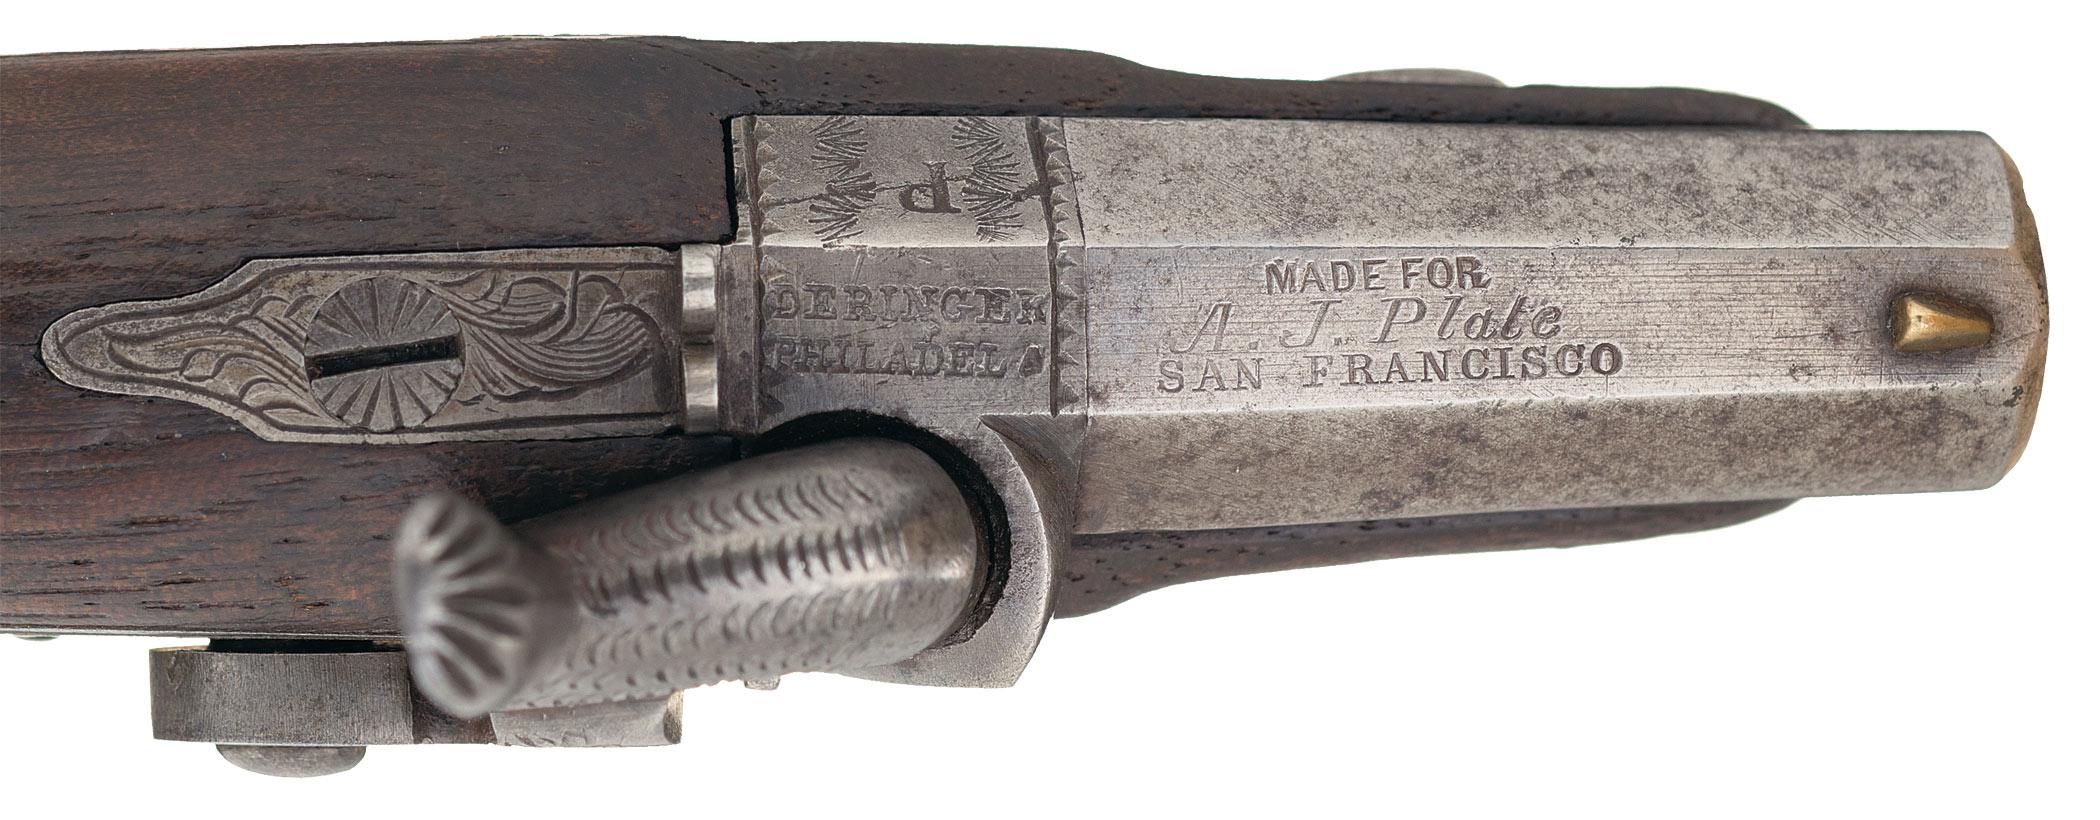 A. J. Plate Deringer Pocket Pistol